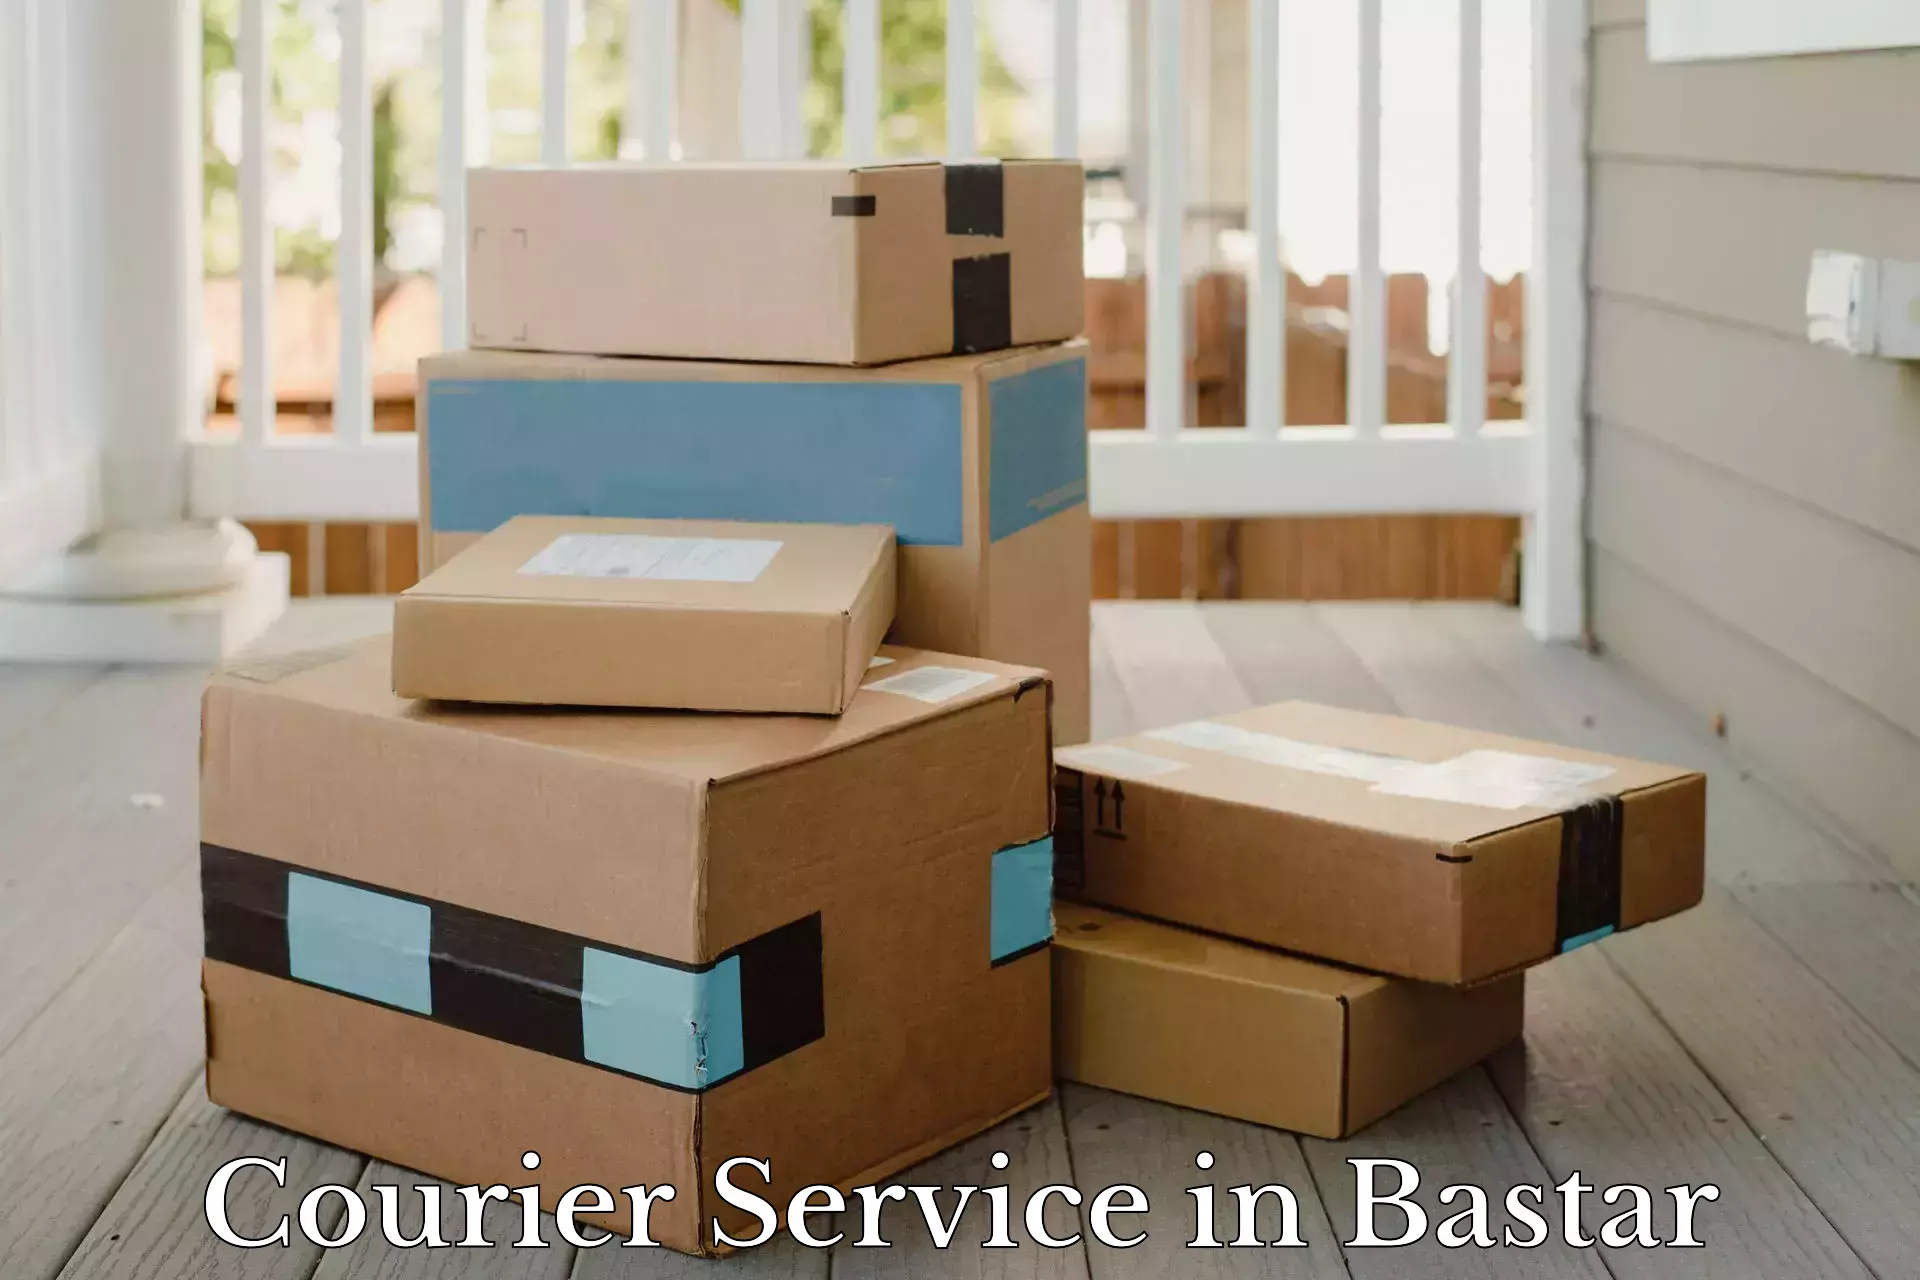 Affordable parcel rates in Bastar